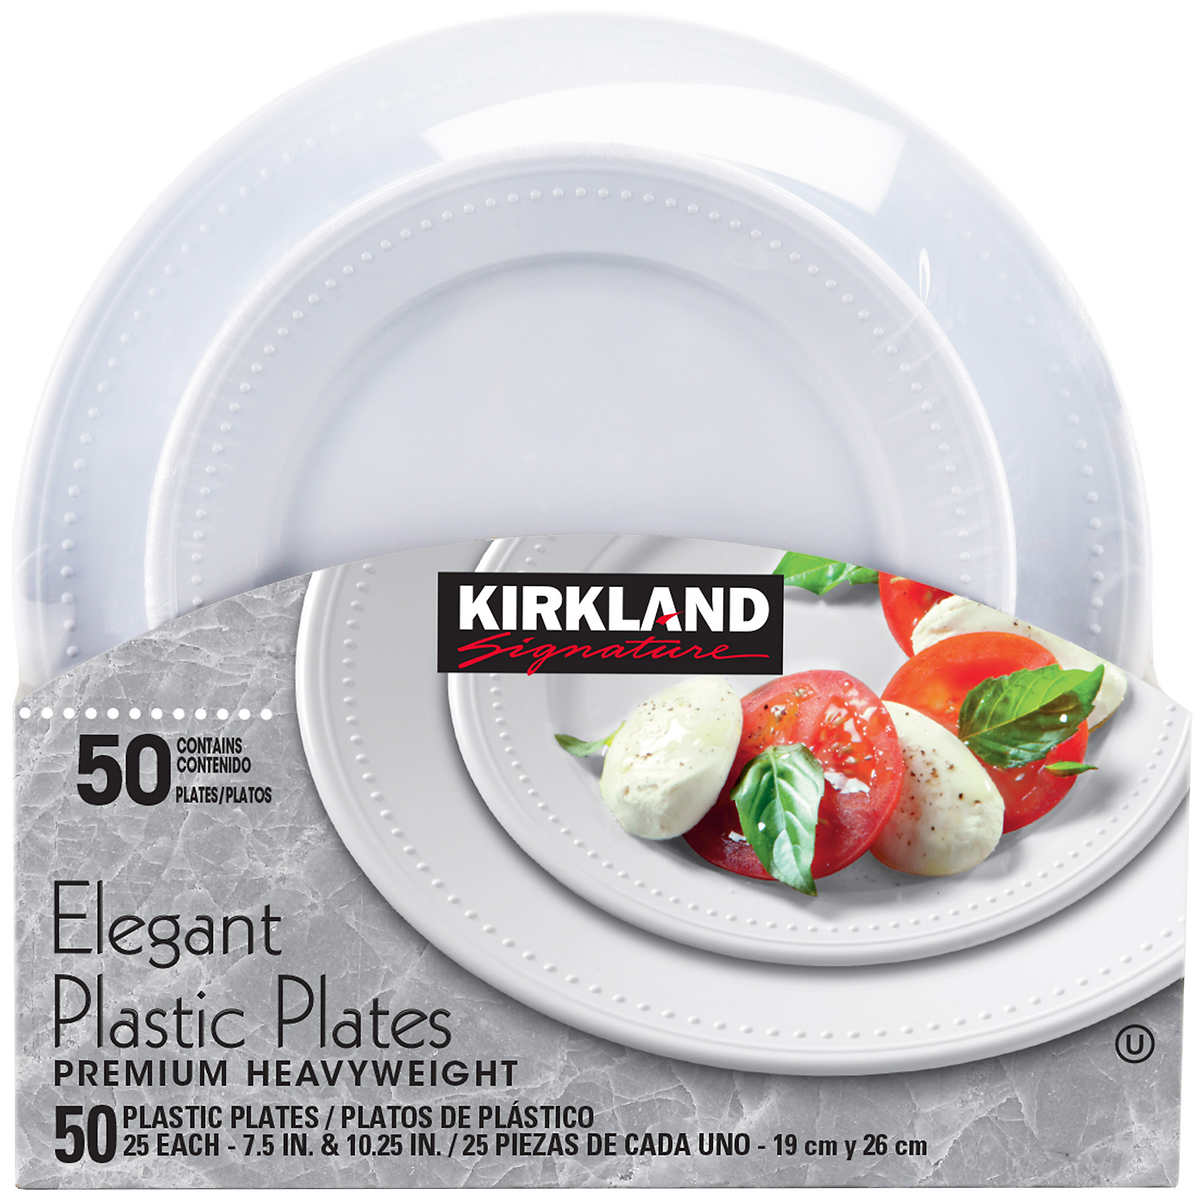 Kirkland Signature Elegant Plastic Plates 50-count